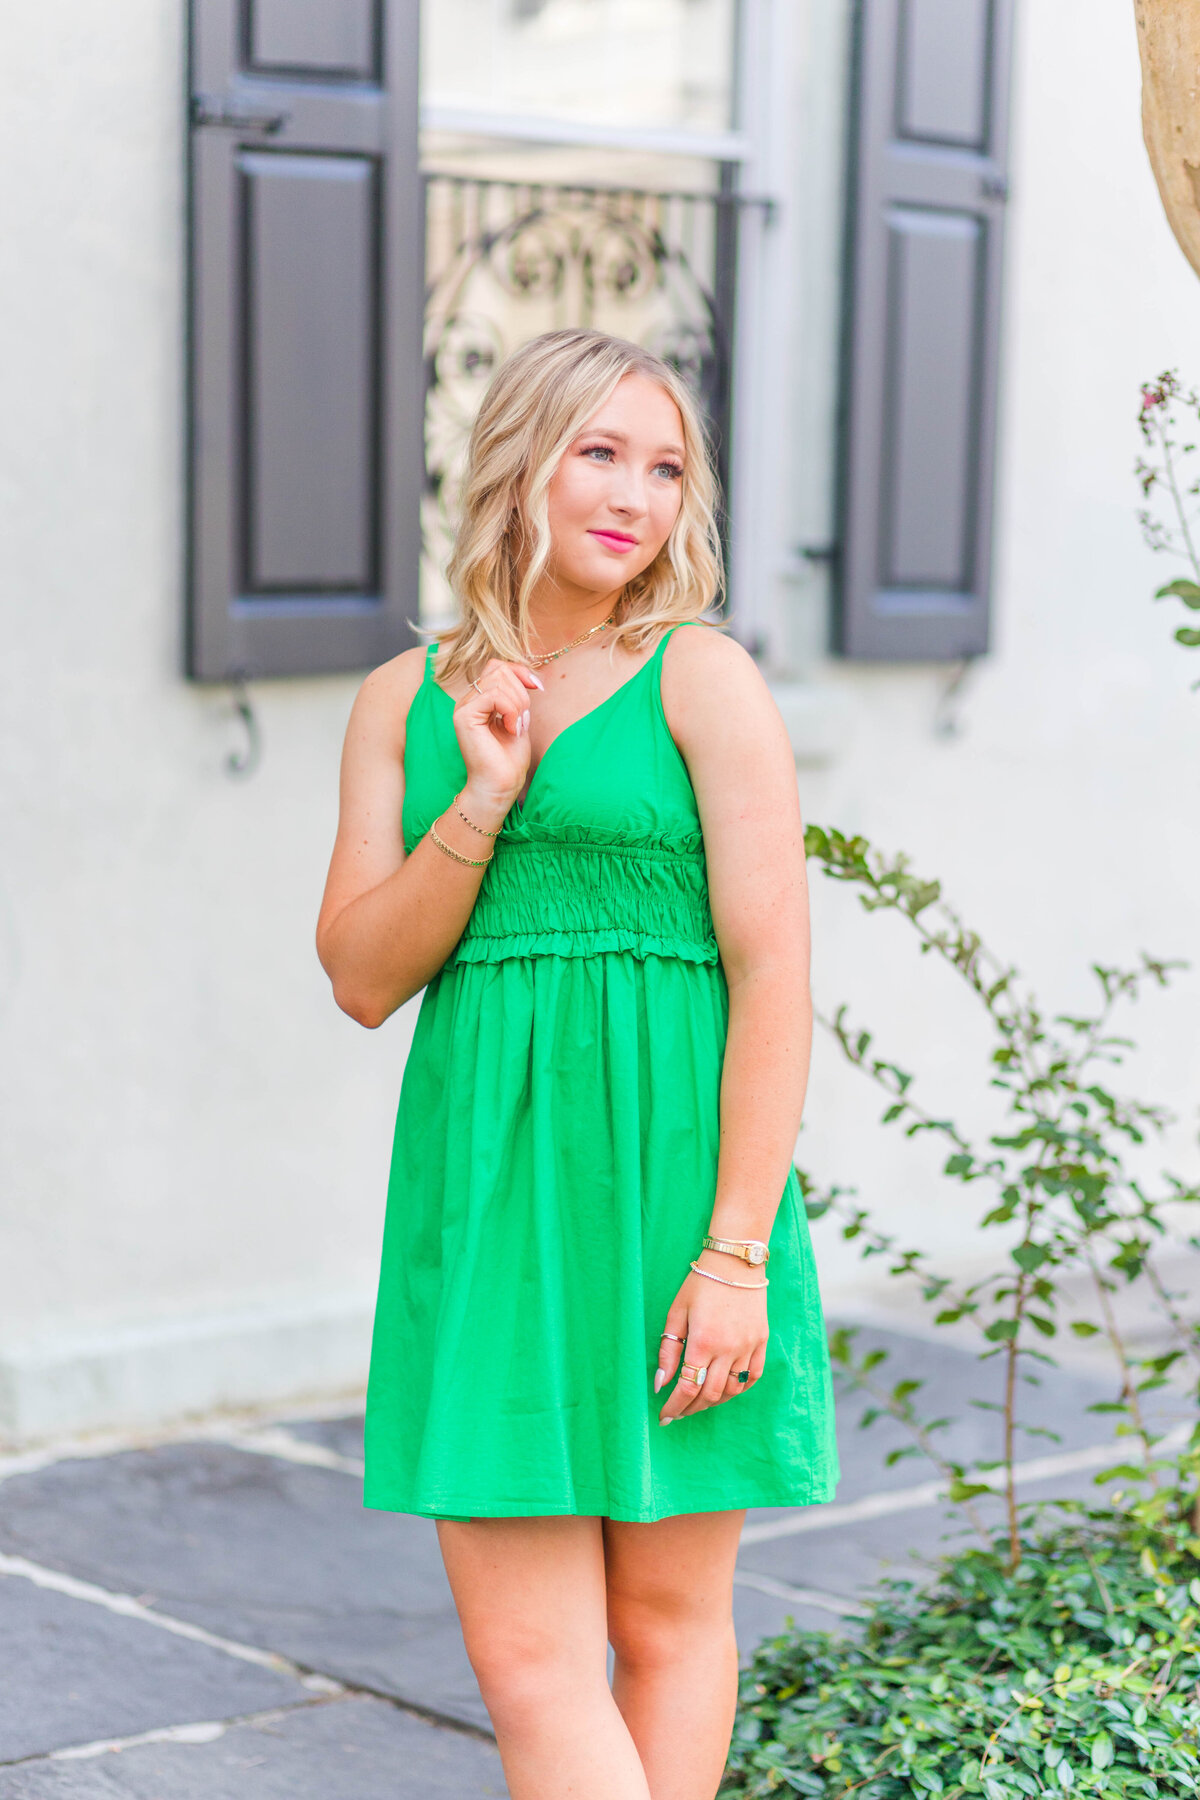 senior girl in green dress